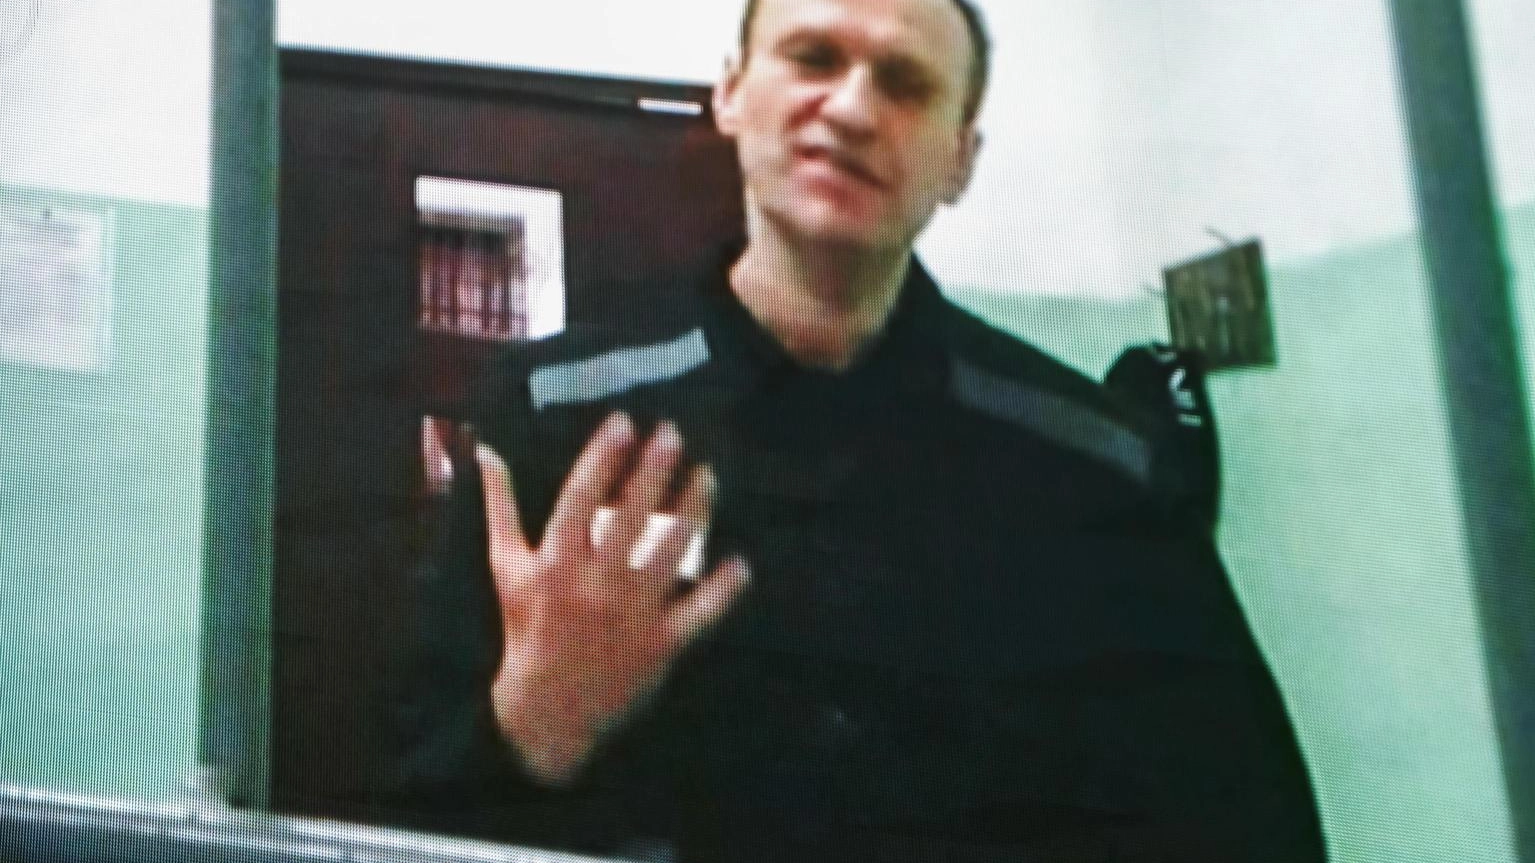 Russia: sospese udienze su denunce Navalny, non si sa dove sia